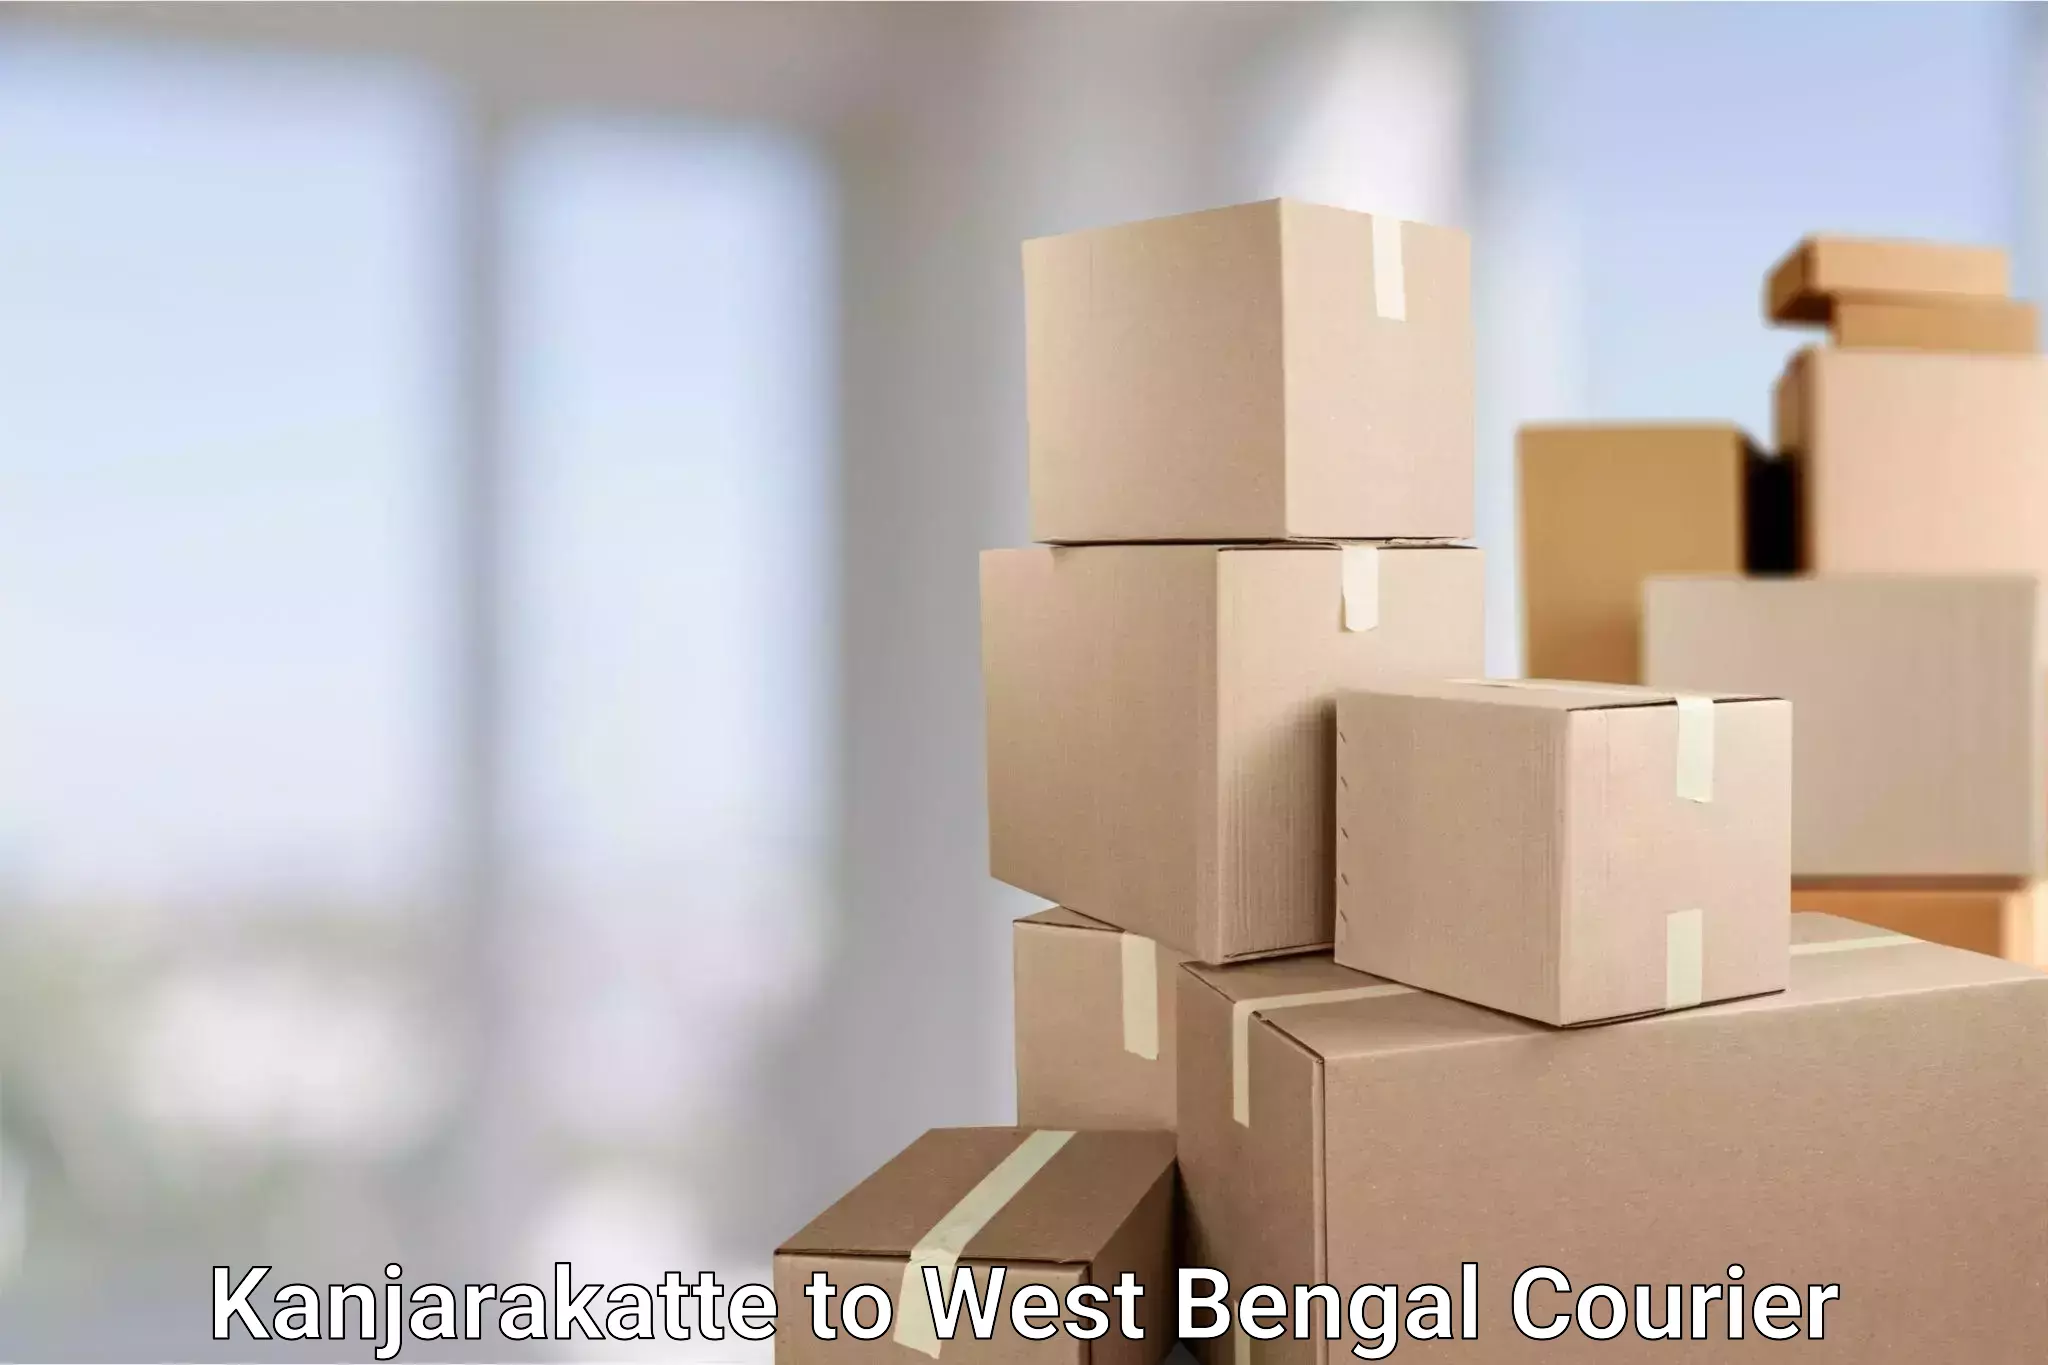 Express postal services Kanjarakatte to West Bengal